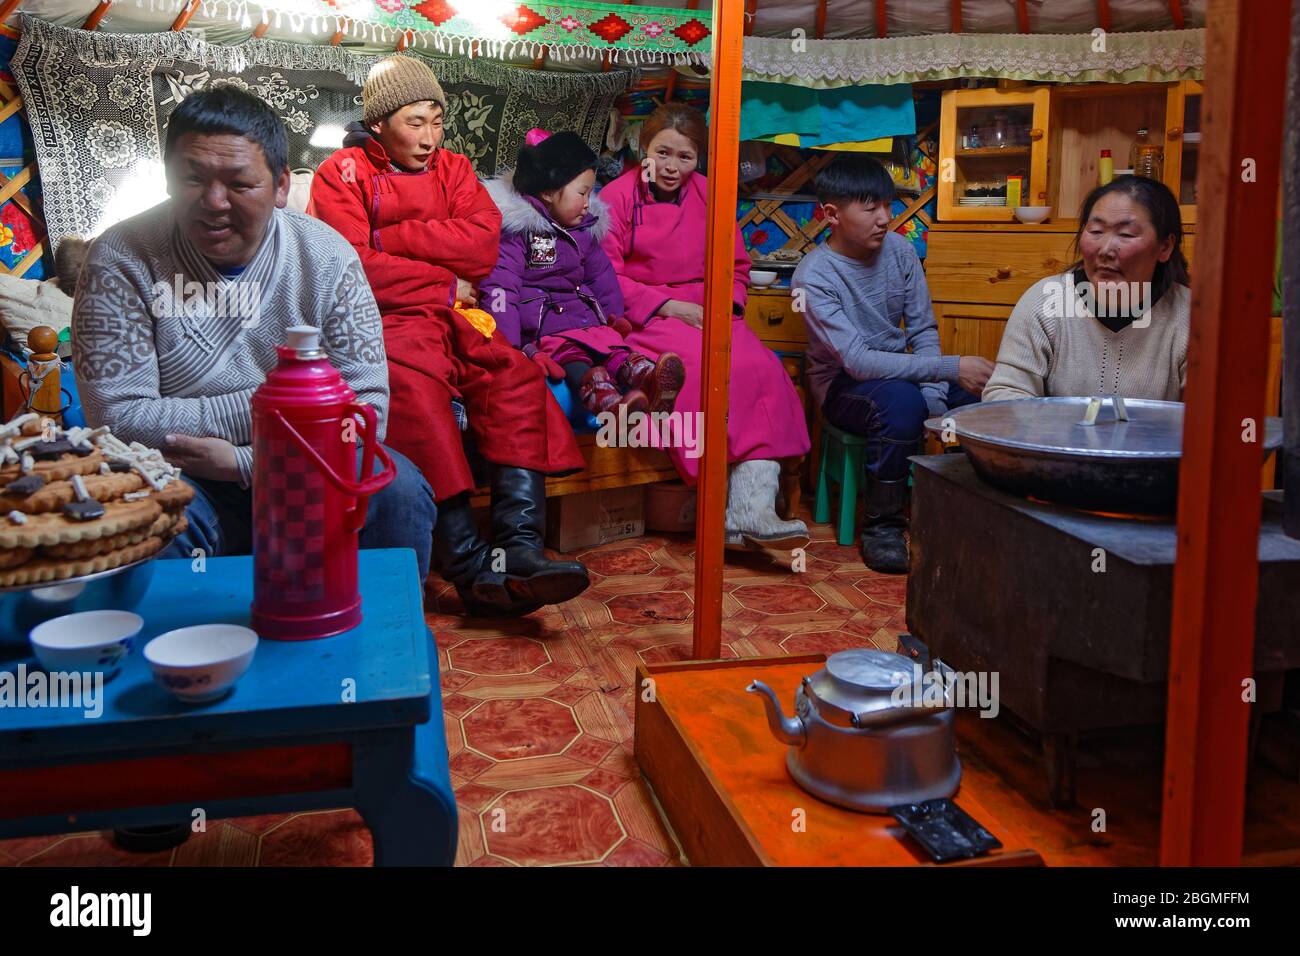 KHATGAL, MONGOLEI, 25. Februar 2020 : Mongolische Menschen besuchen ihre Familie und Freunde in ihren Jurten während des Tsagaan Zar, dem mongolischen Neujahr. Stockfoto